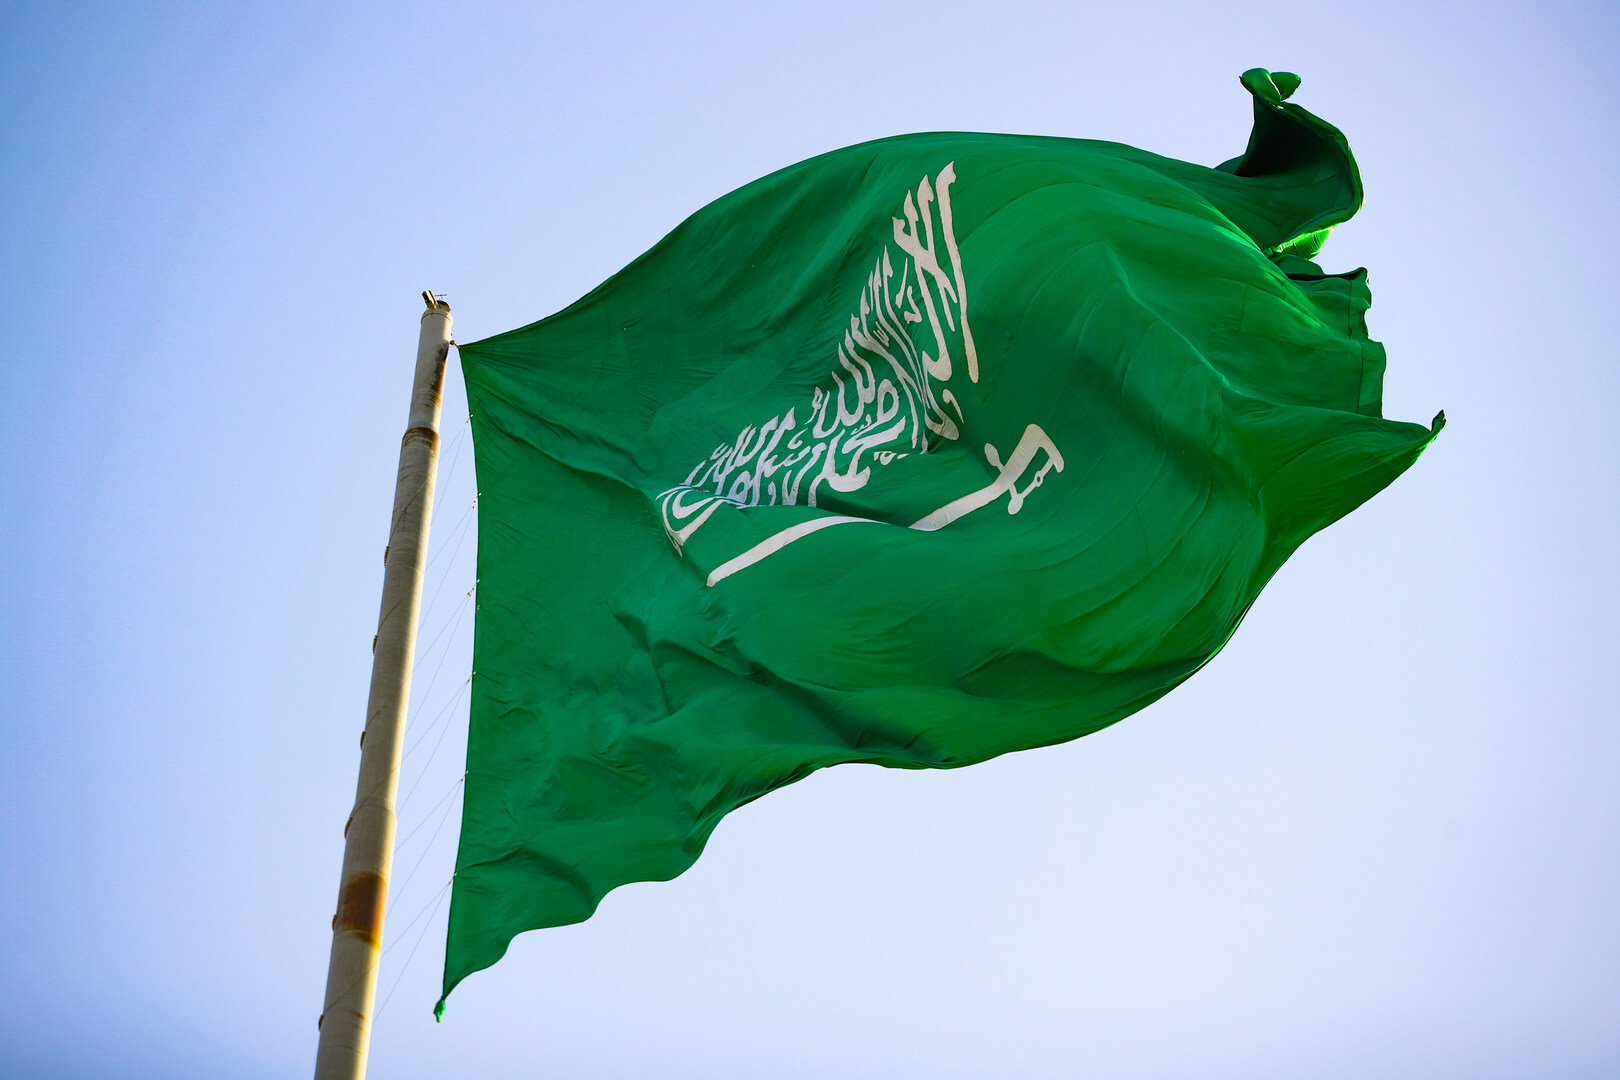 بيان ميزانية السعودية للعام 2024: عجز بنسبة 1.9% ونمو يبلغ 4.4%